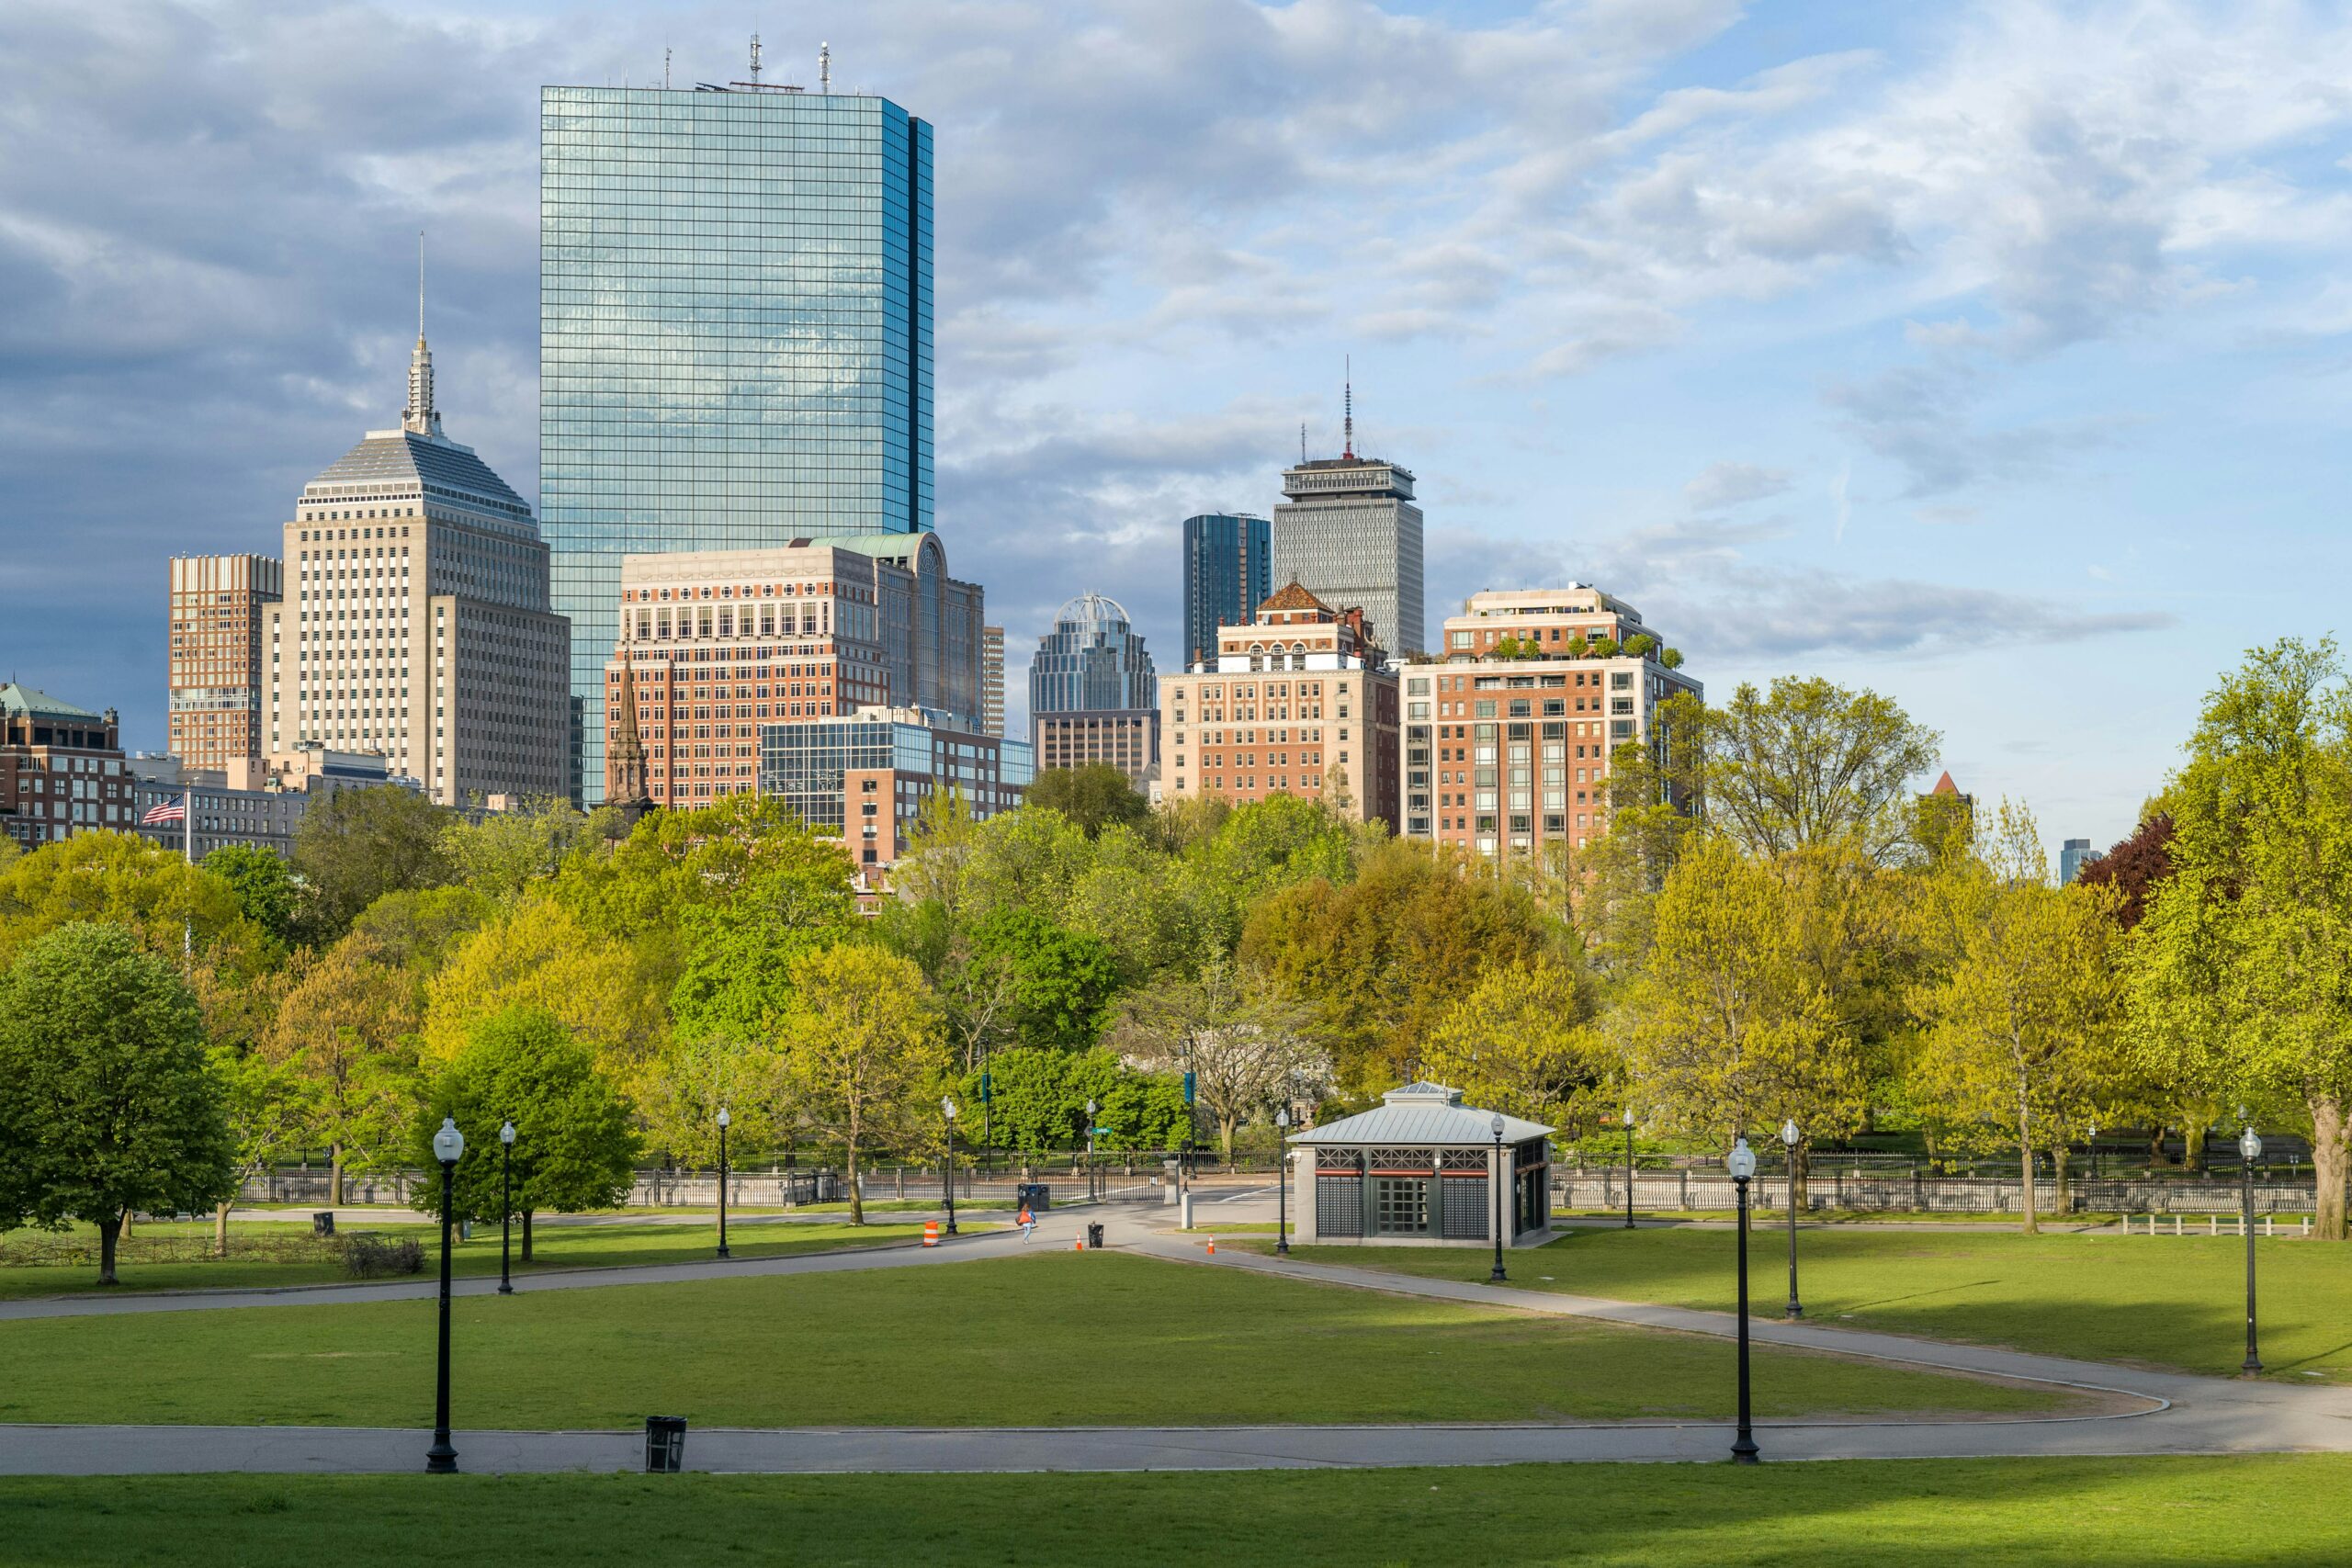 City shot of Boston